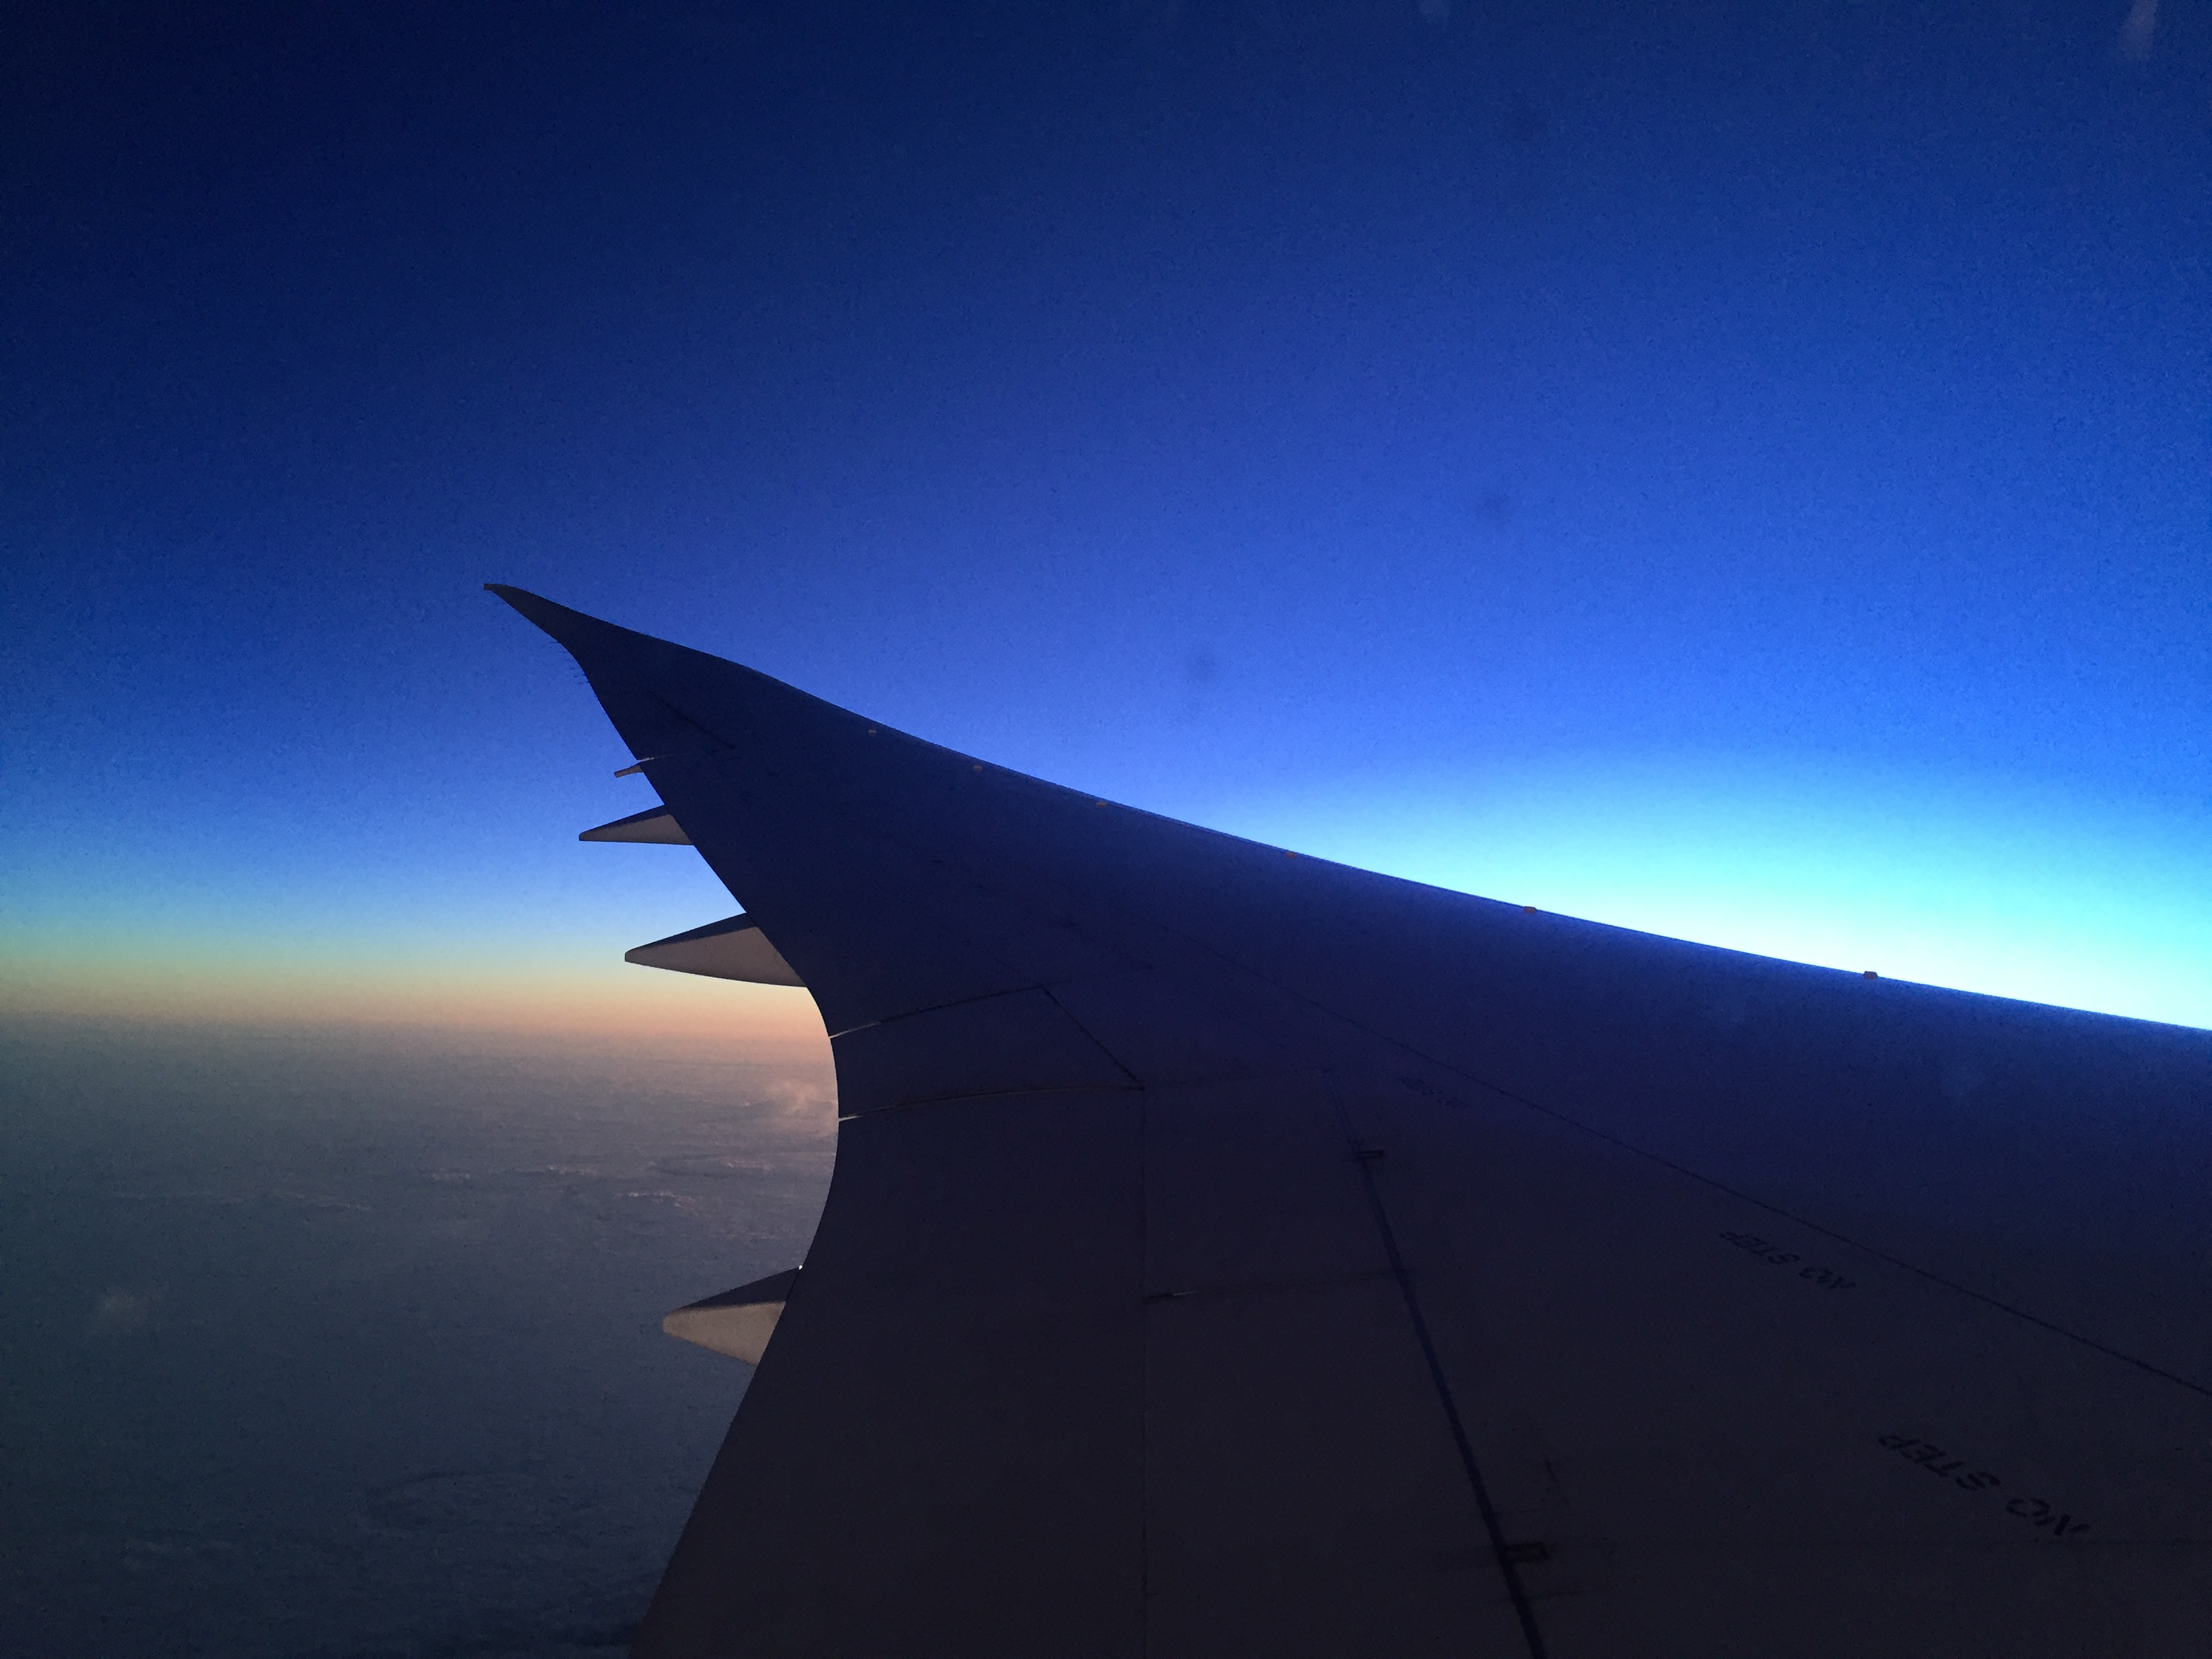 Espectacular vista del amanecer. Sin duda el ala del Dreamliner, tiene algo que enamora. 